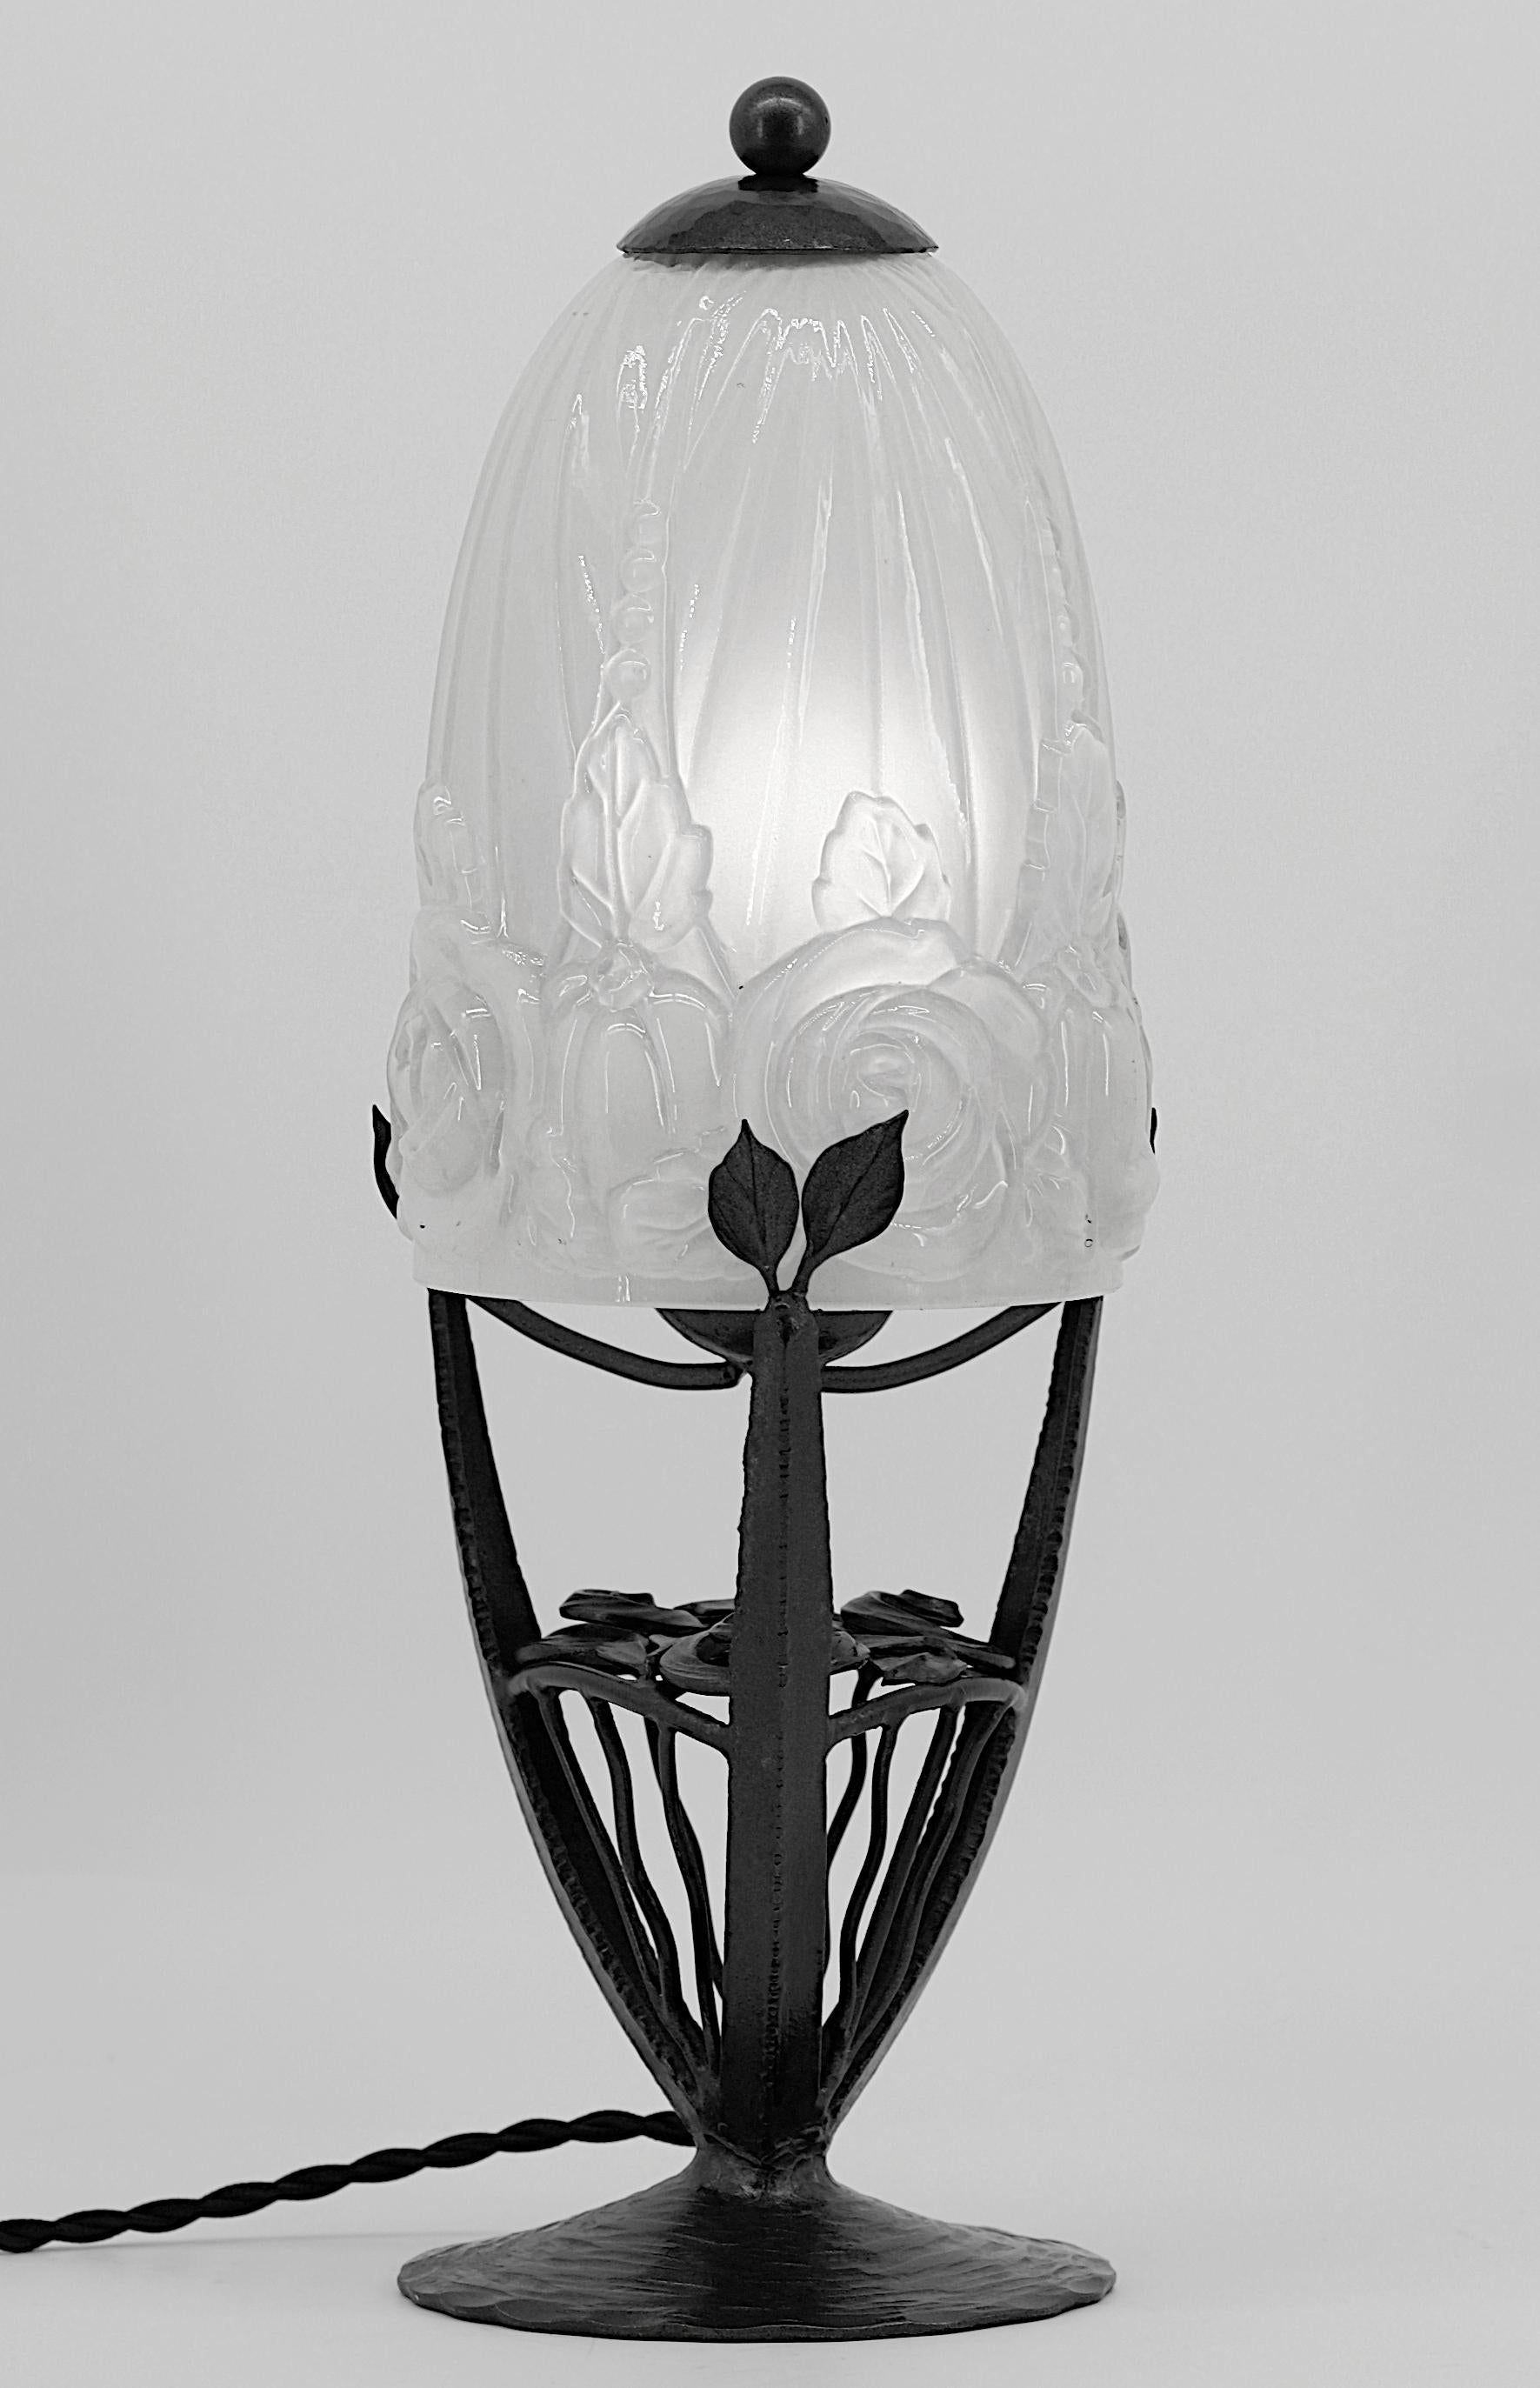 Französische Art-Déco-Tischlampe von HETTIER-VINCENT, 10 rue de Turenne in Paris, Frankreich, ca. 1925. Glas und Schmiedeeisen. Köstlicher Sockel aus Schmiedeeisen von Hettier-Vincent mit einem halbkristallinen Lampenschirm von Baccarat. Dieser